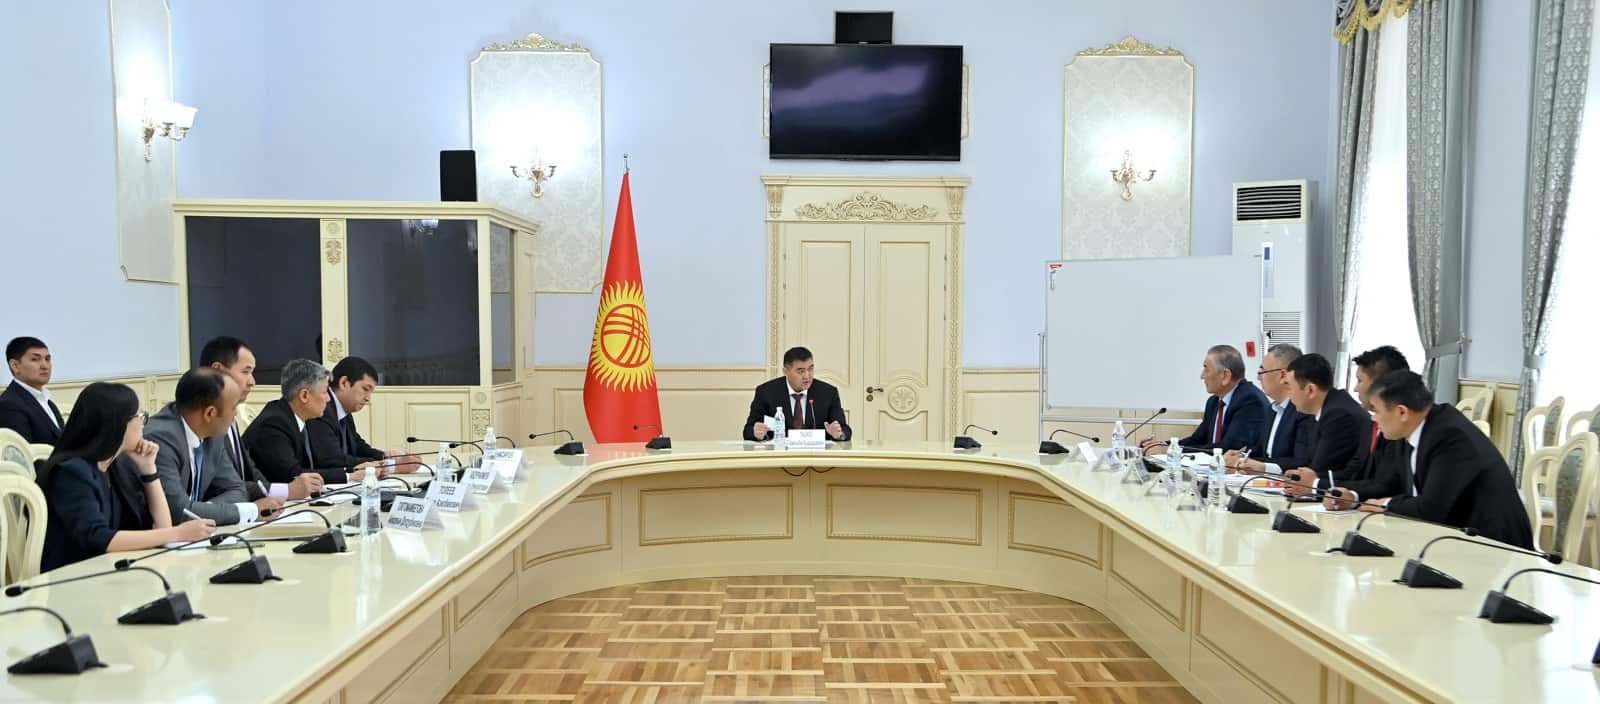 Зампред кабмина Камчыбек Ташиев провел совещание по приграничным вопросам